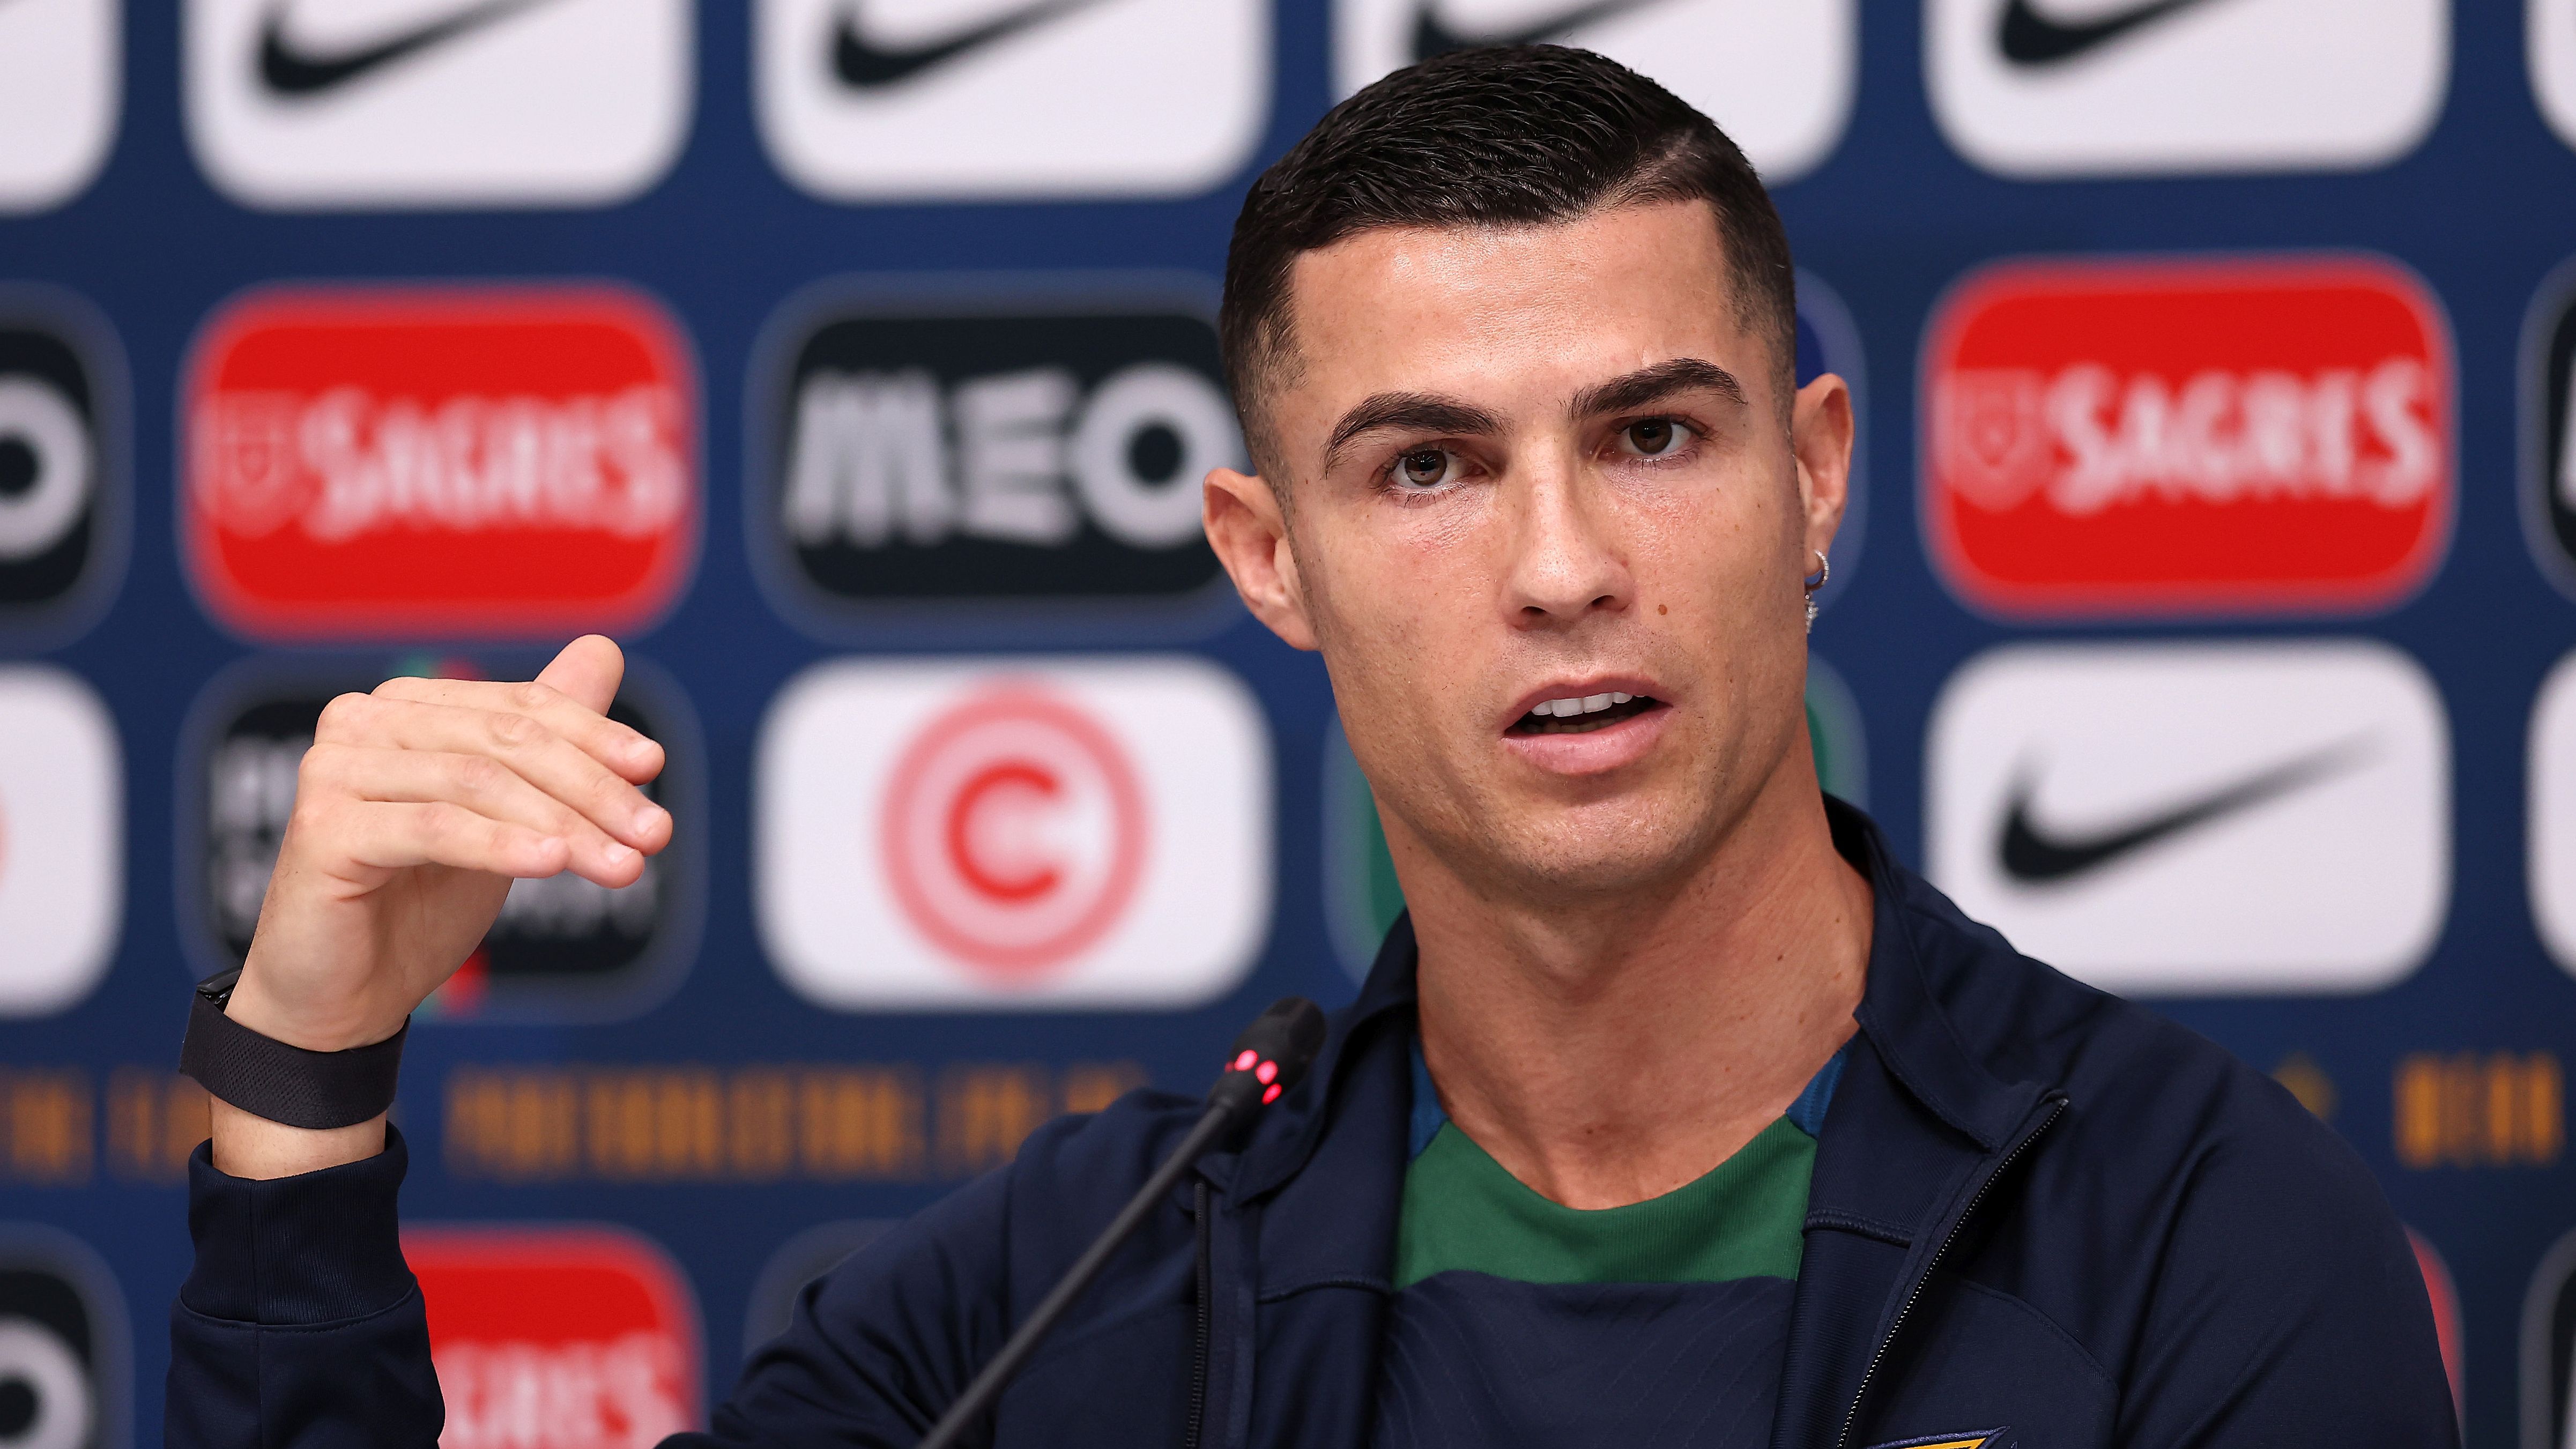 Komoly összeget spórol Ronaldo kirúgásával a Manchester United – sajtóhír